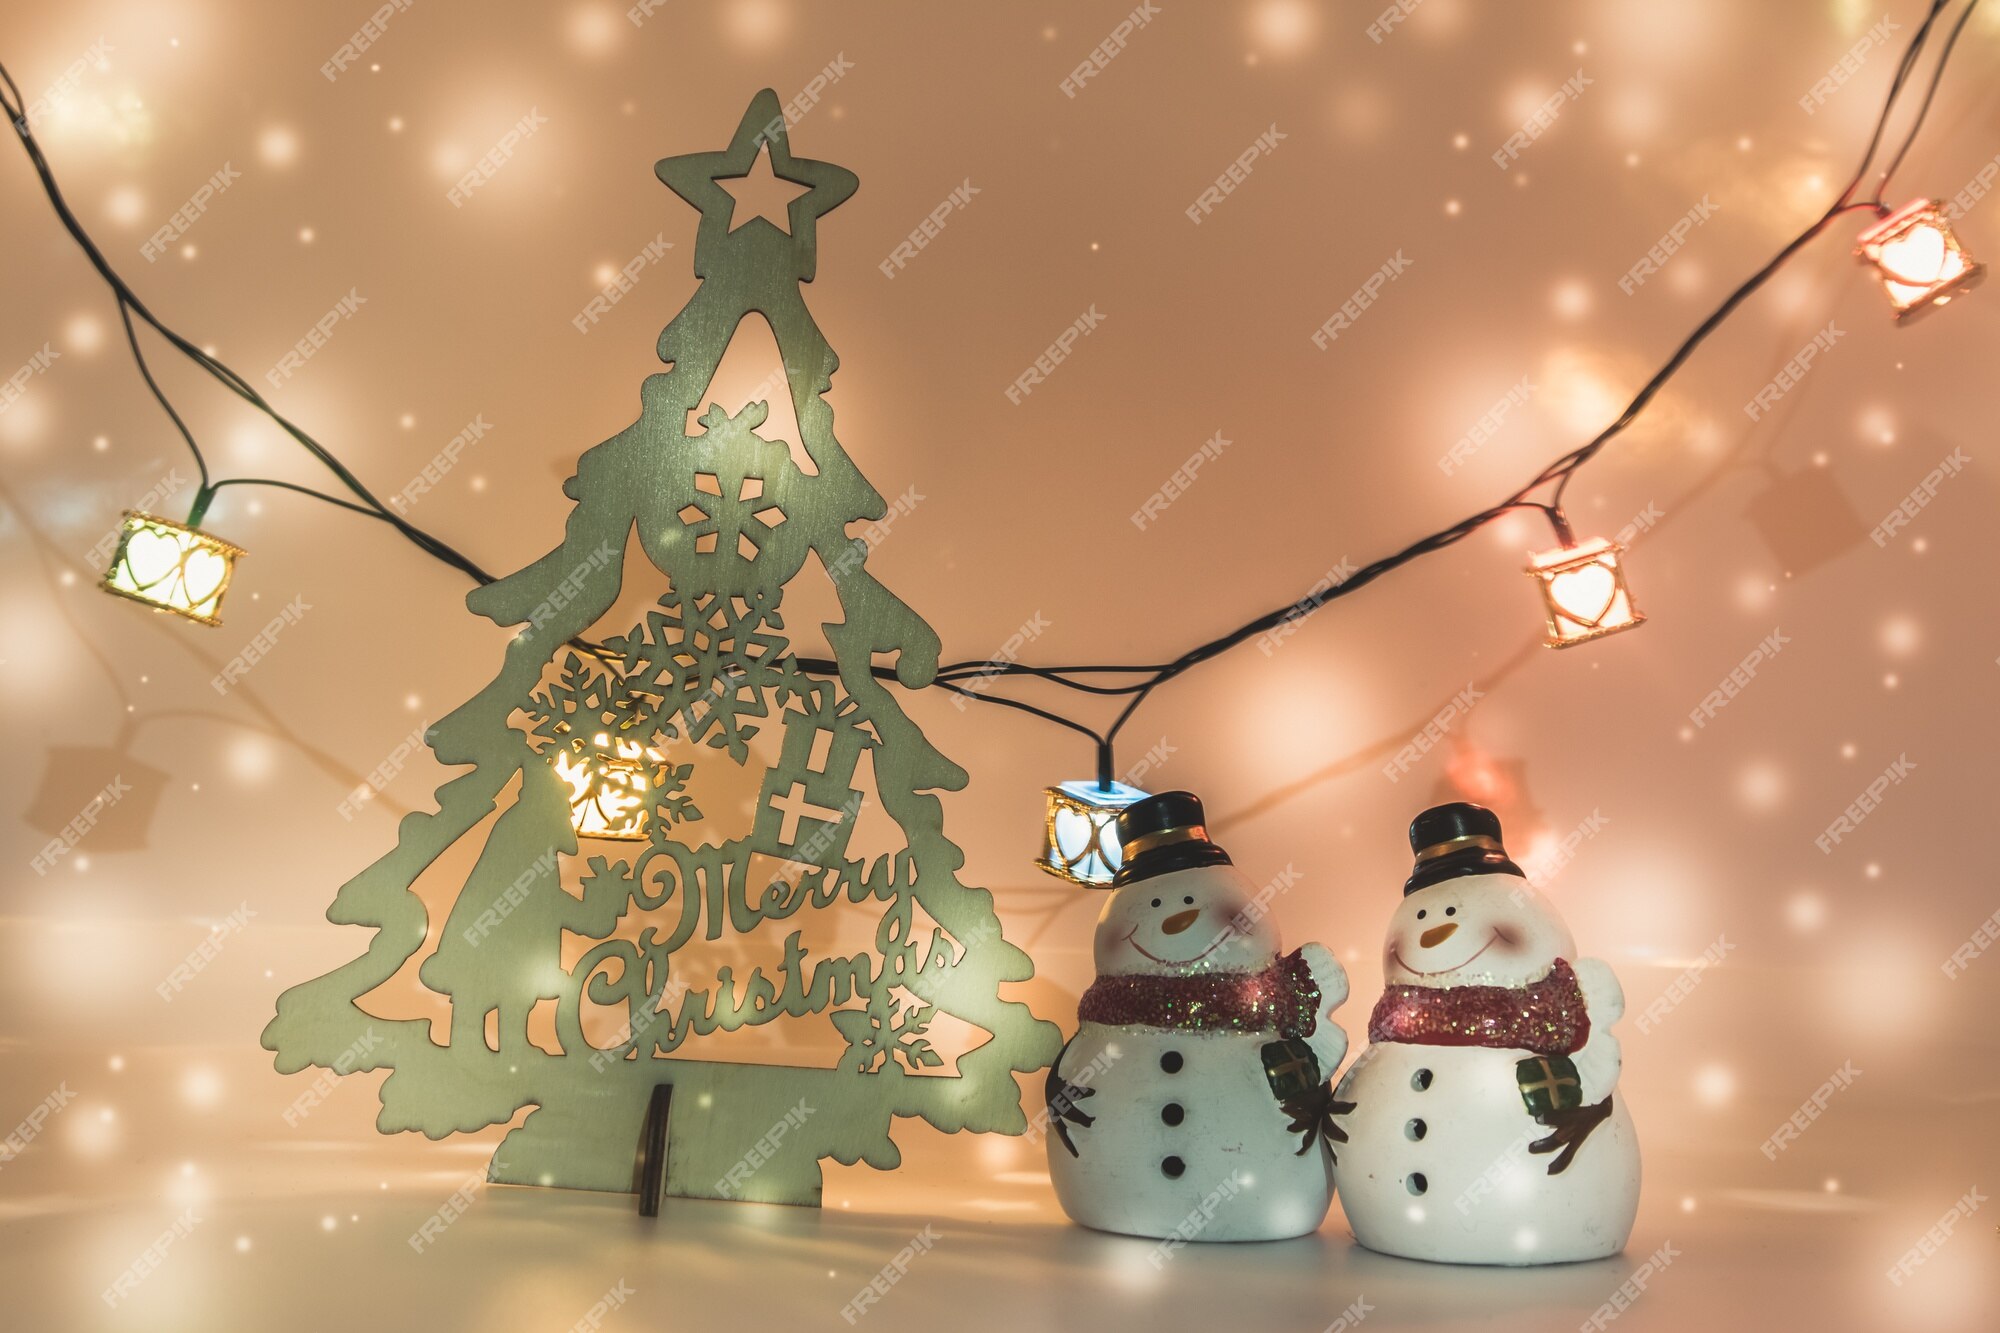 Hãy đến với hình ảnh cây thông Noel trang trí tuyệt đẹp này để đắm chìm trong không khí Giáng sinh ấm áp! Khám phá những chiếc đèn lấp lánh và những món đồ trang trí đáng yêu, cùng cảm nhận sức sống của mùa lễ hội tràn ngập khắp nơi.